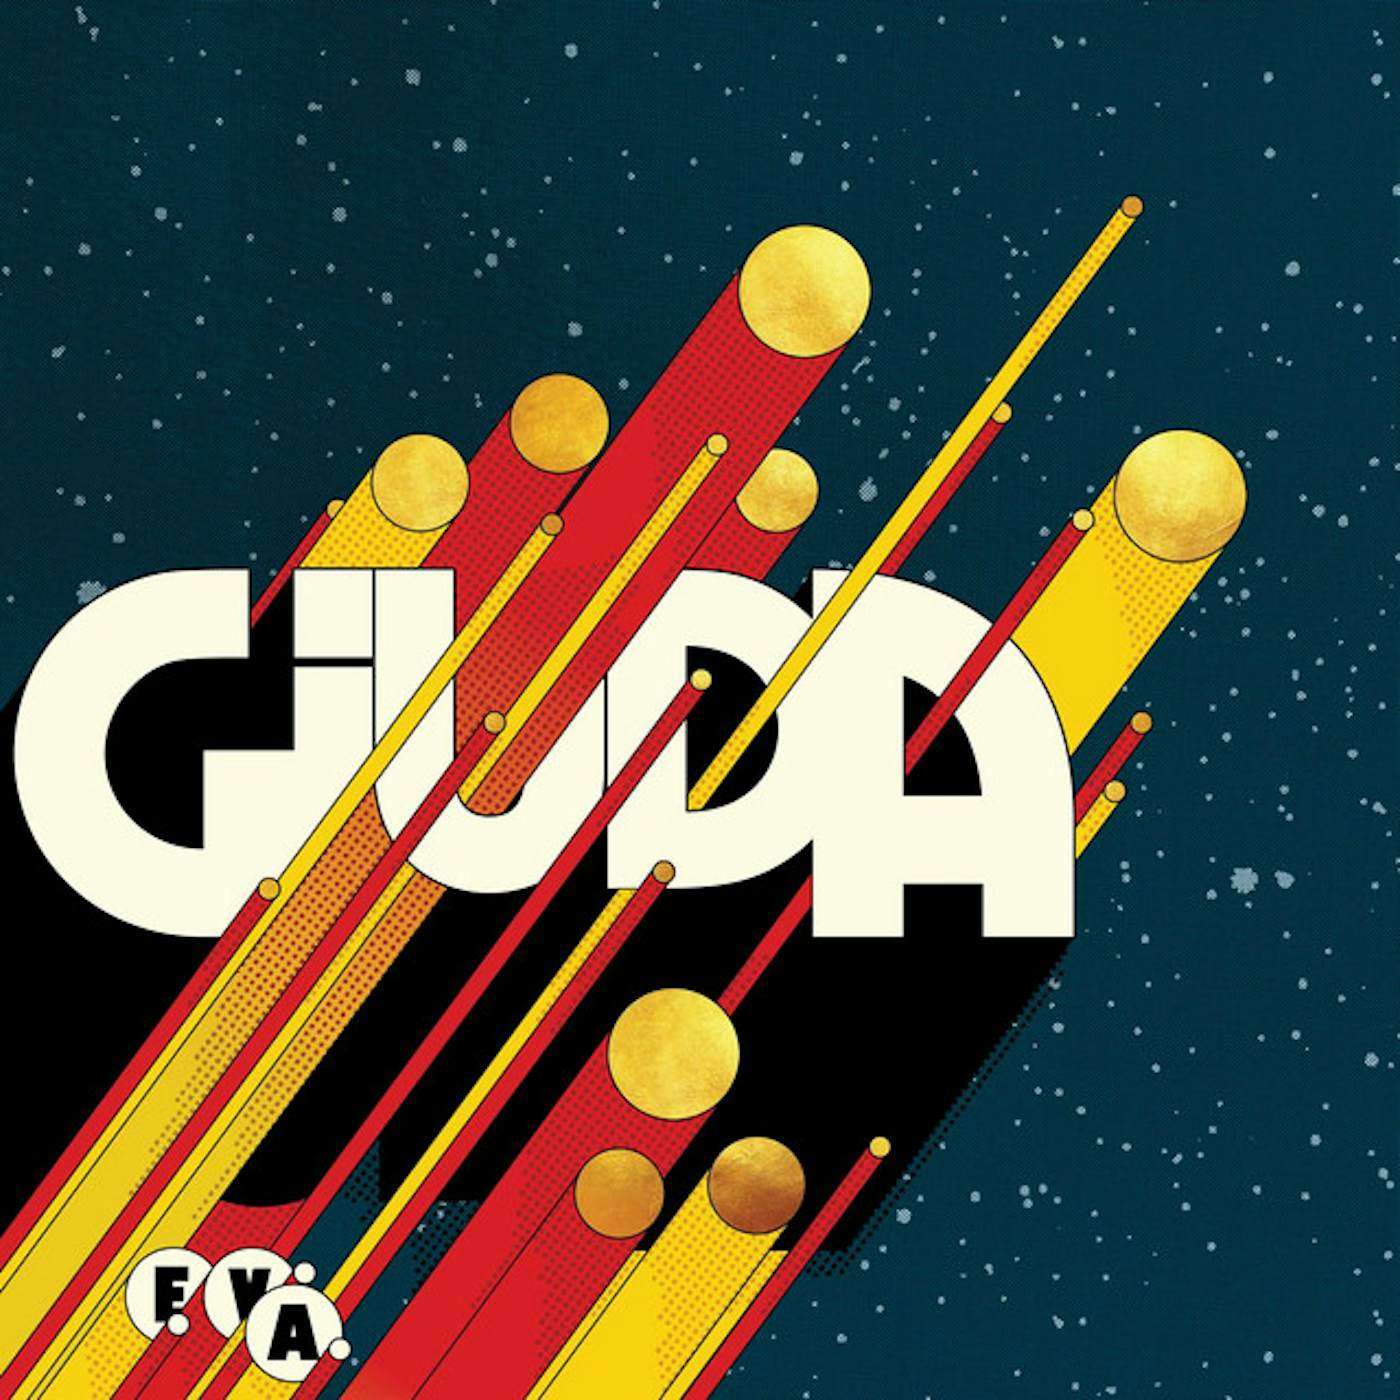 Giuda E.V.A. Vinyl Record